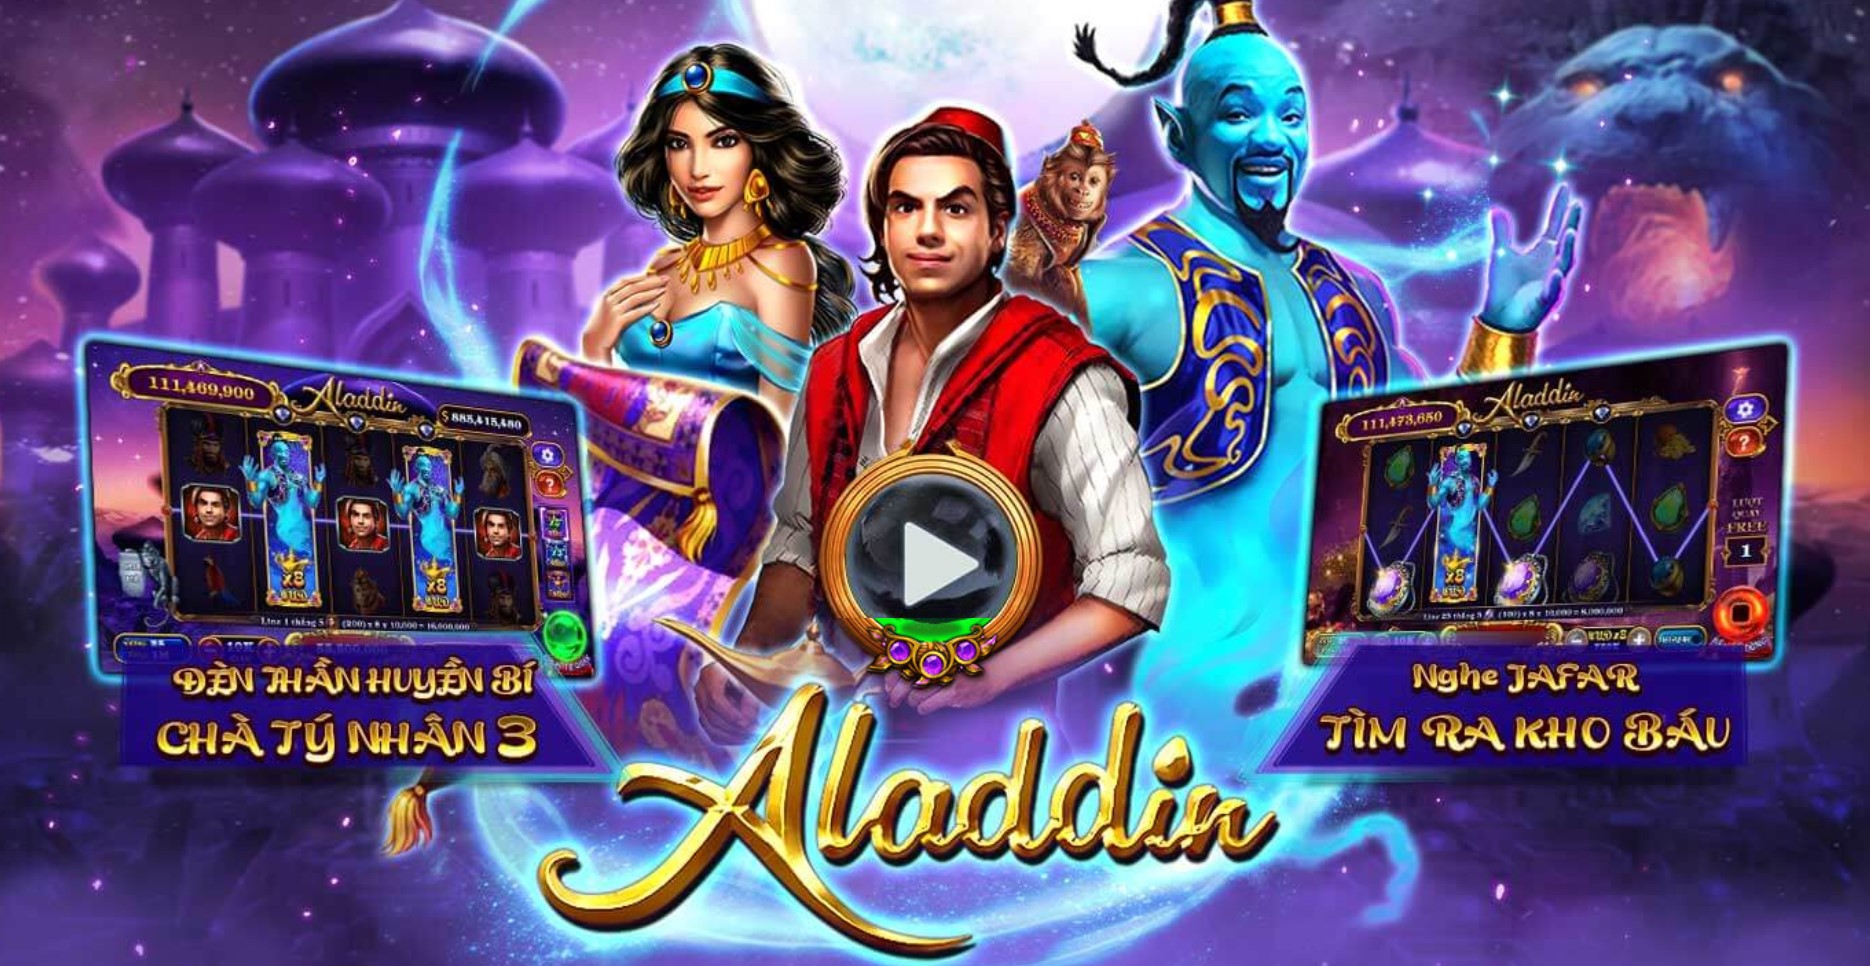 Đôi nét về game nổ hũ Aladdin tại May88